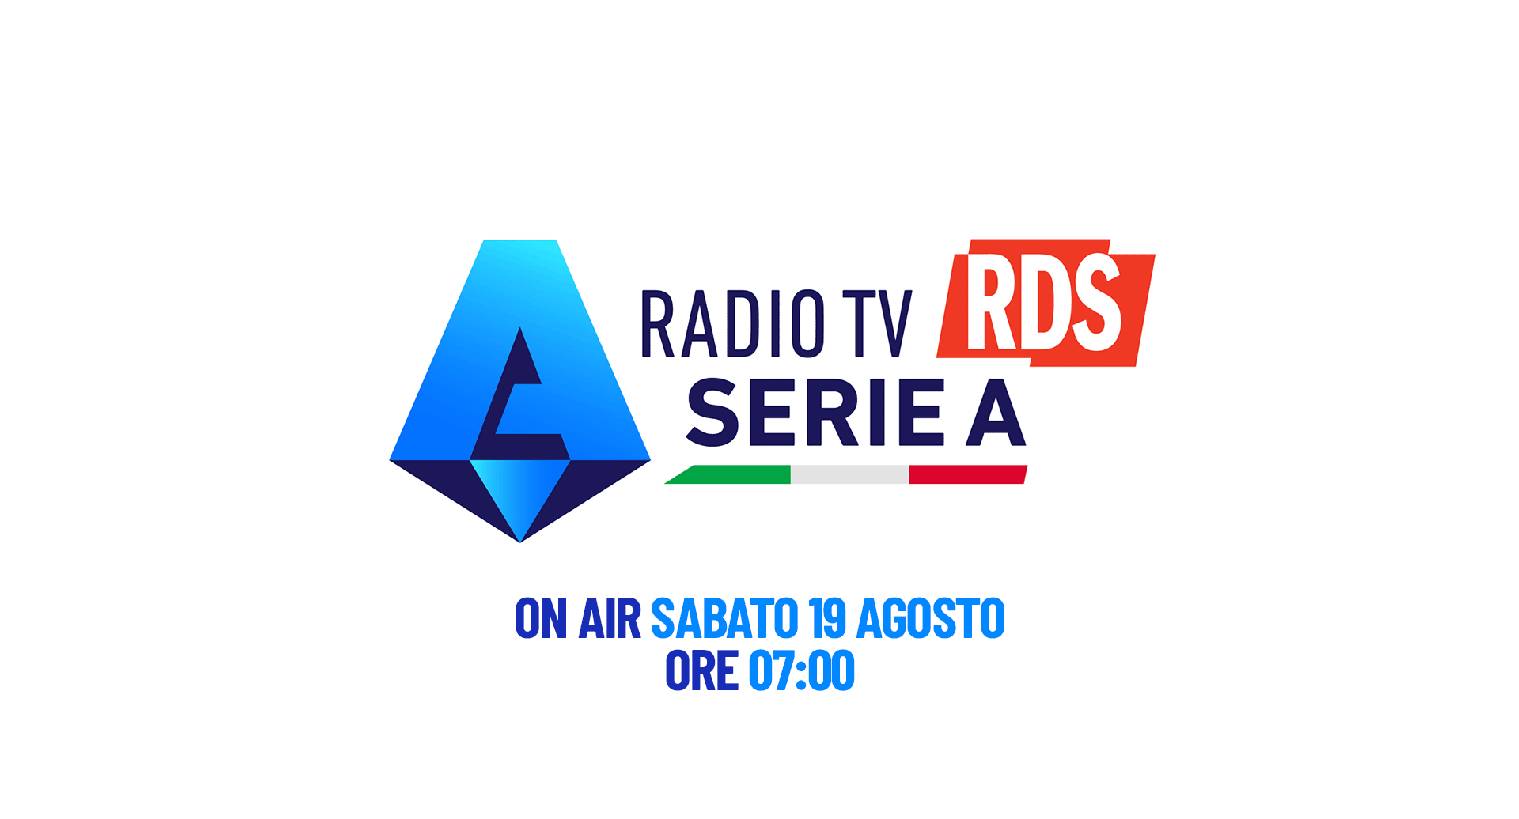 Al via Radio TV Serie A con RDS: palinsesto e programmazione dedicata al campionato di calcio